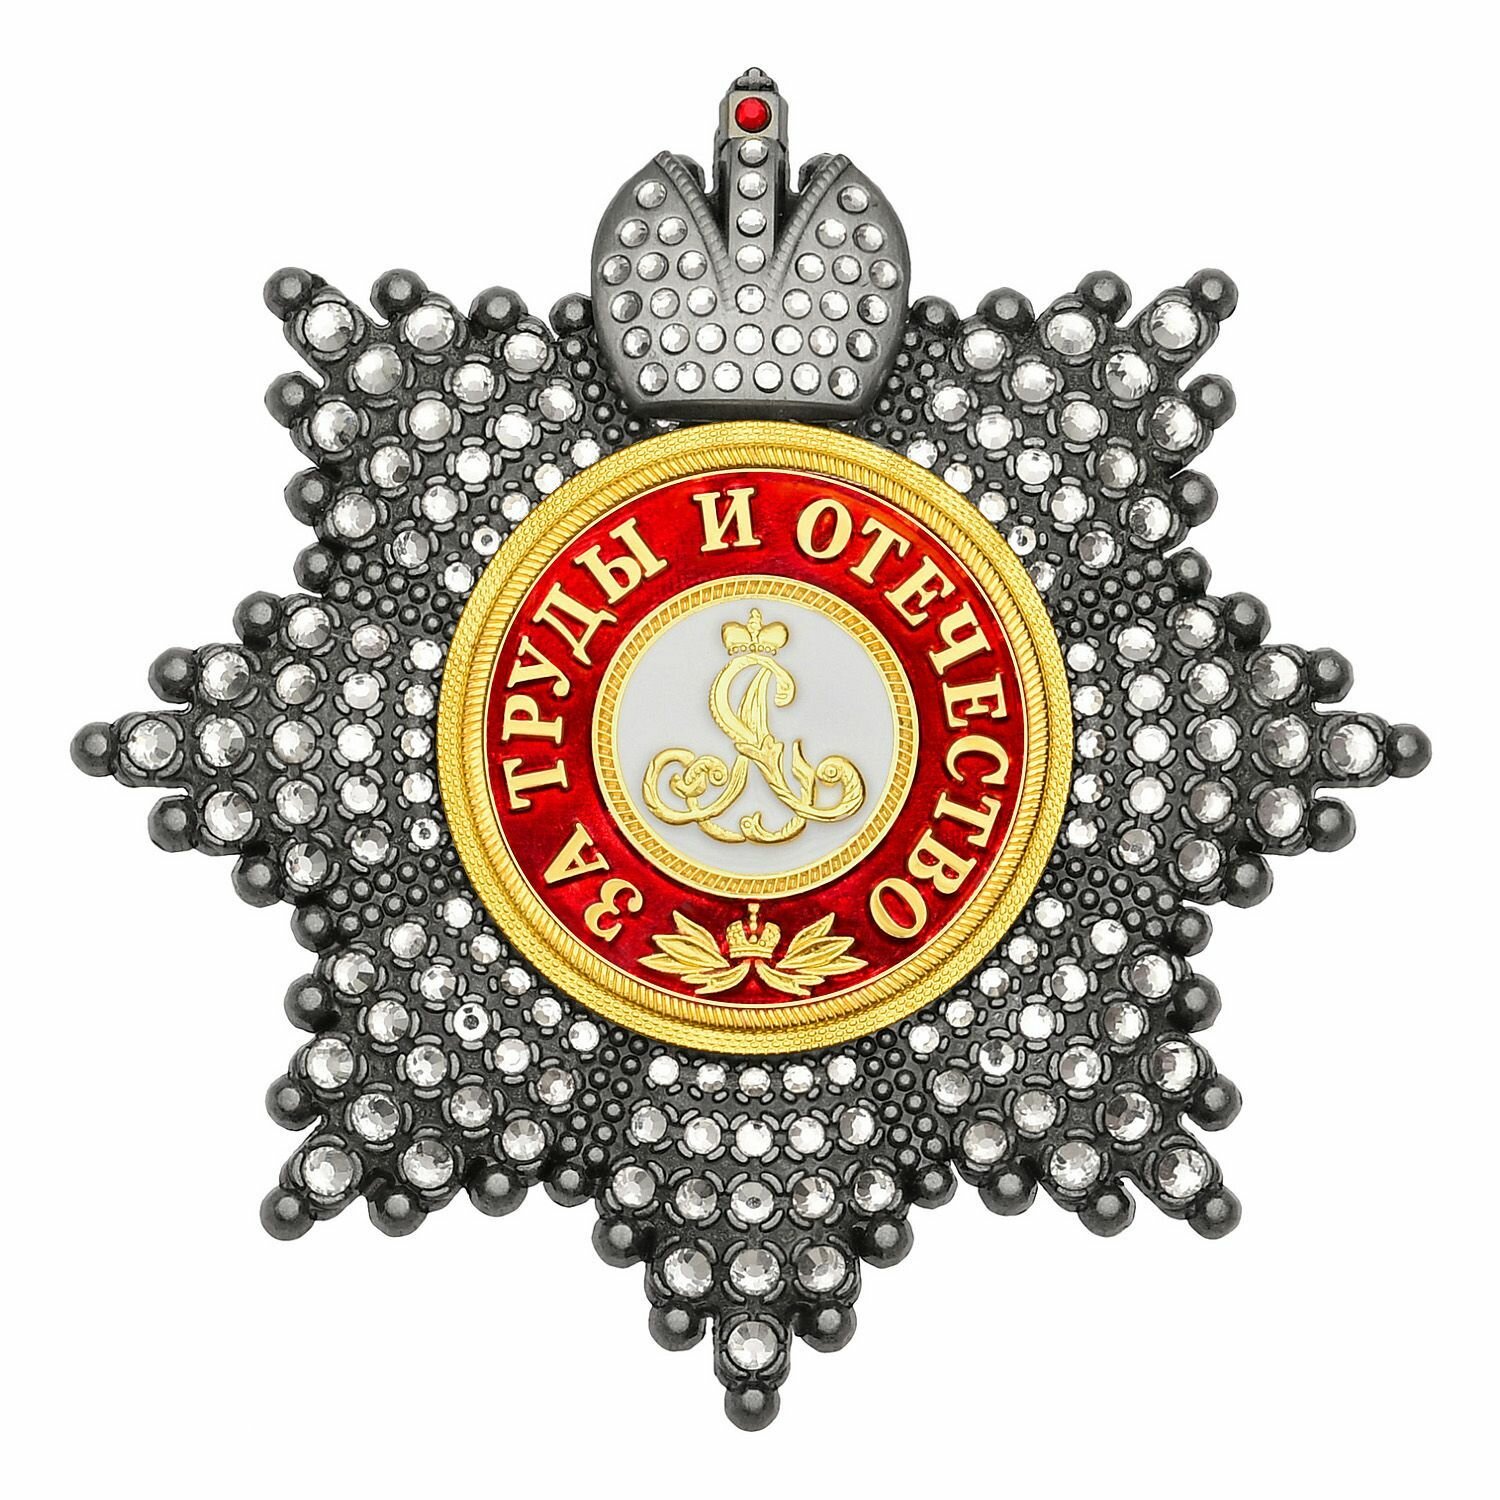 Звезда ордена Александра Невского с короной и стразами, полноразмерный муляж Российской империи